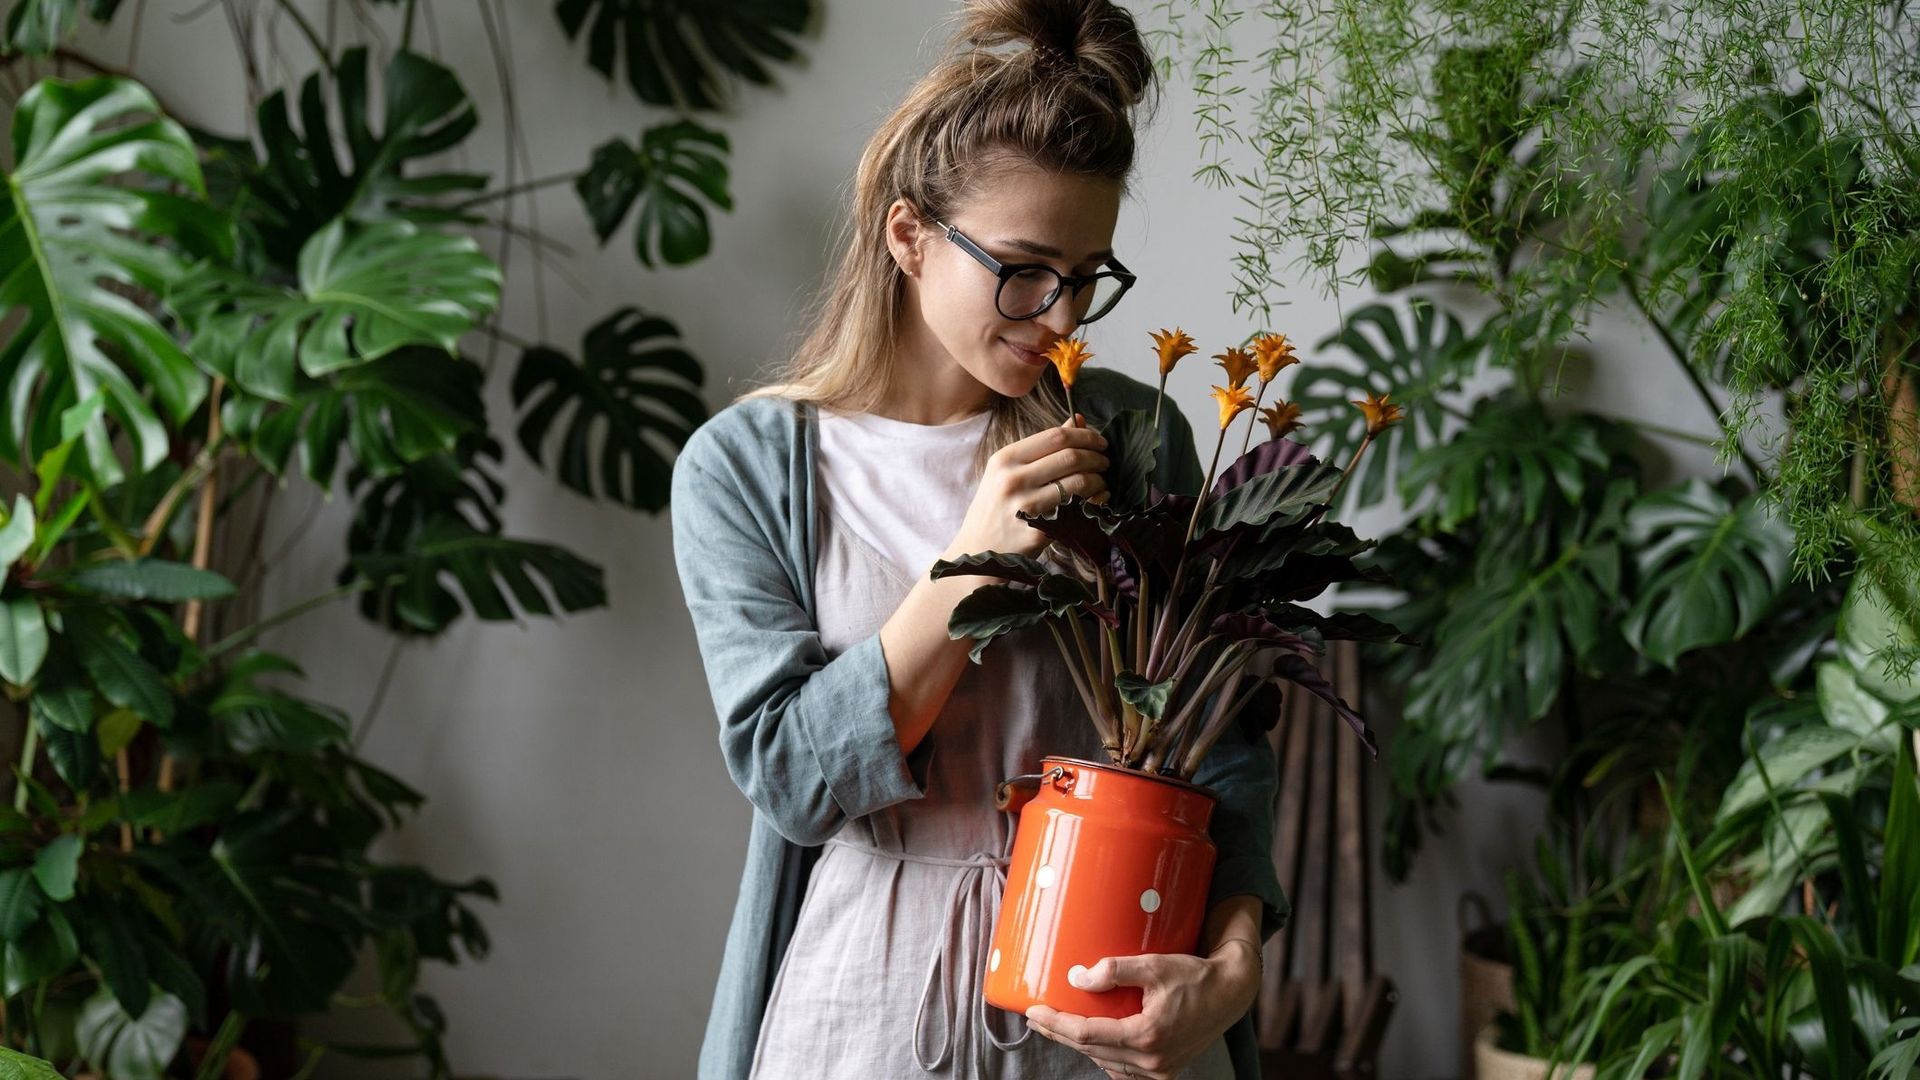 Comment ne pas faire mourir ses plantes ? Les conseils de la Youtubeuse Marion Botanical.